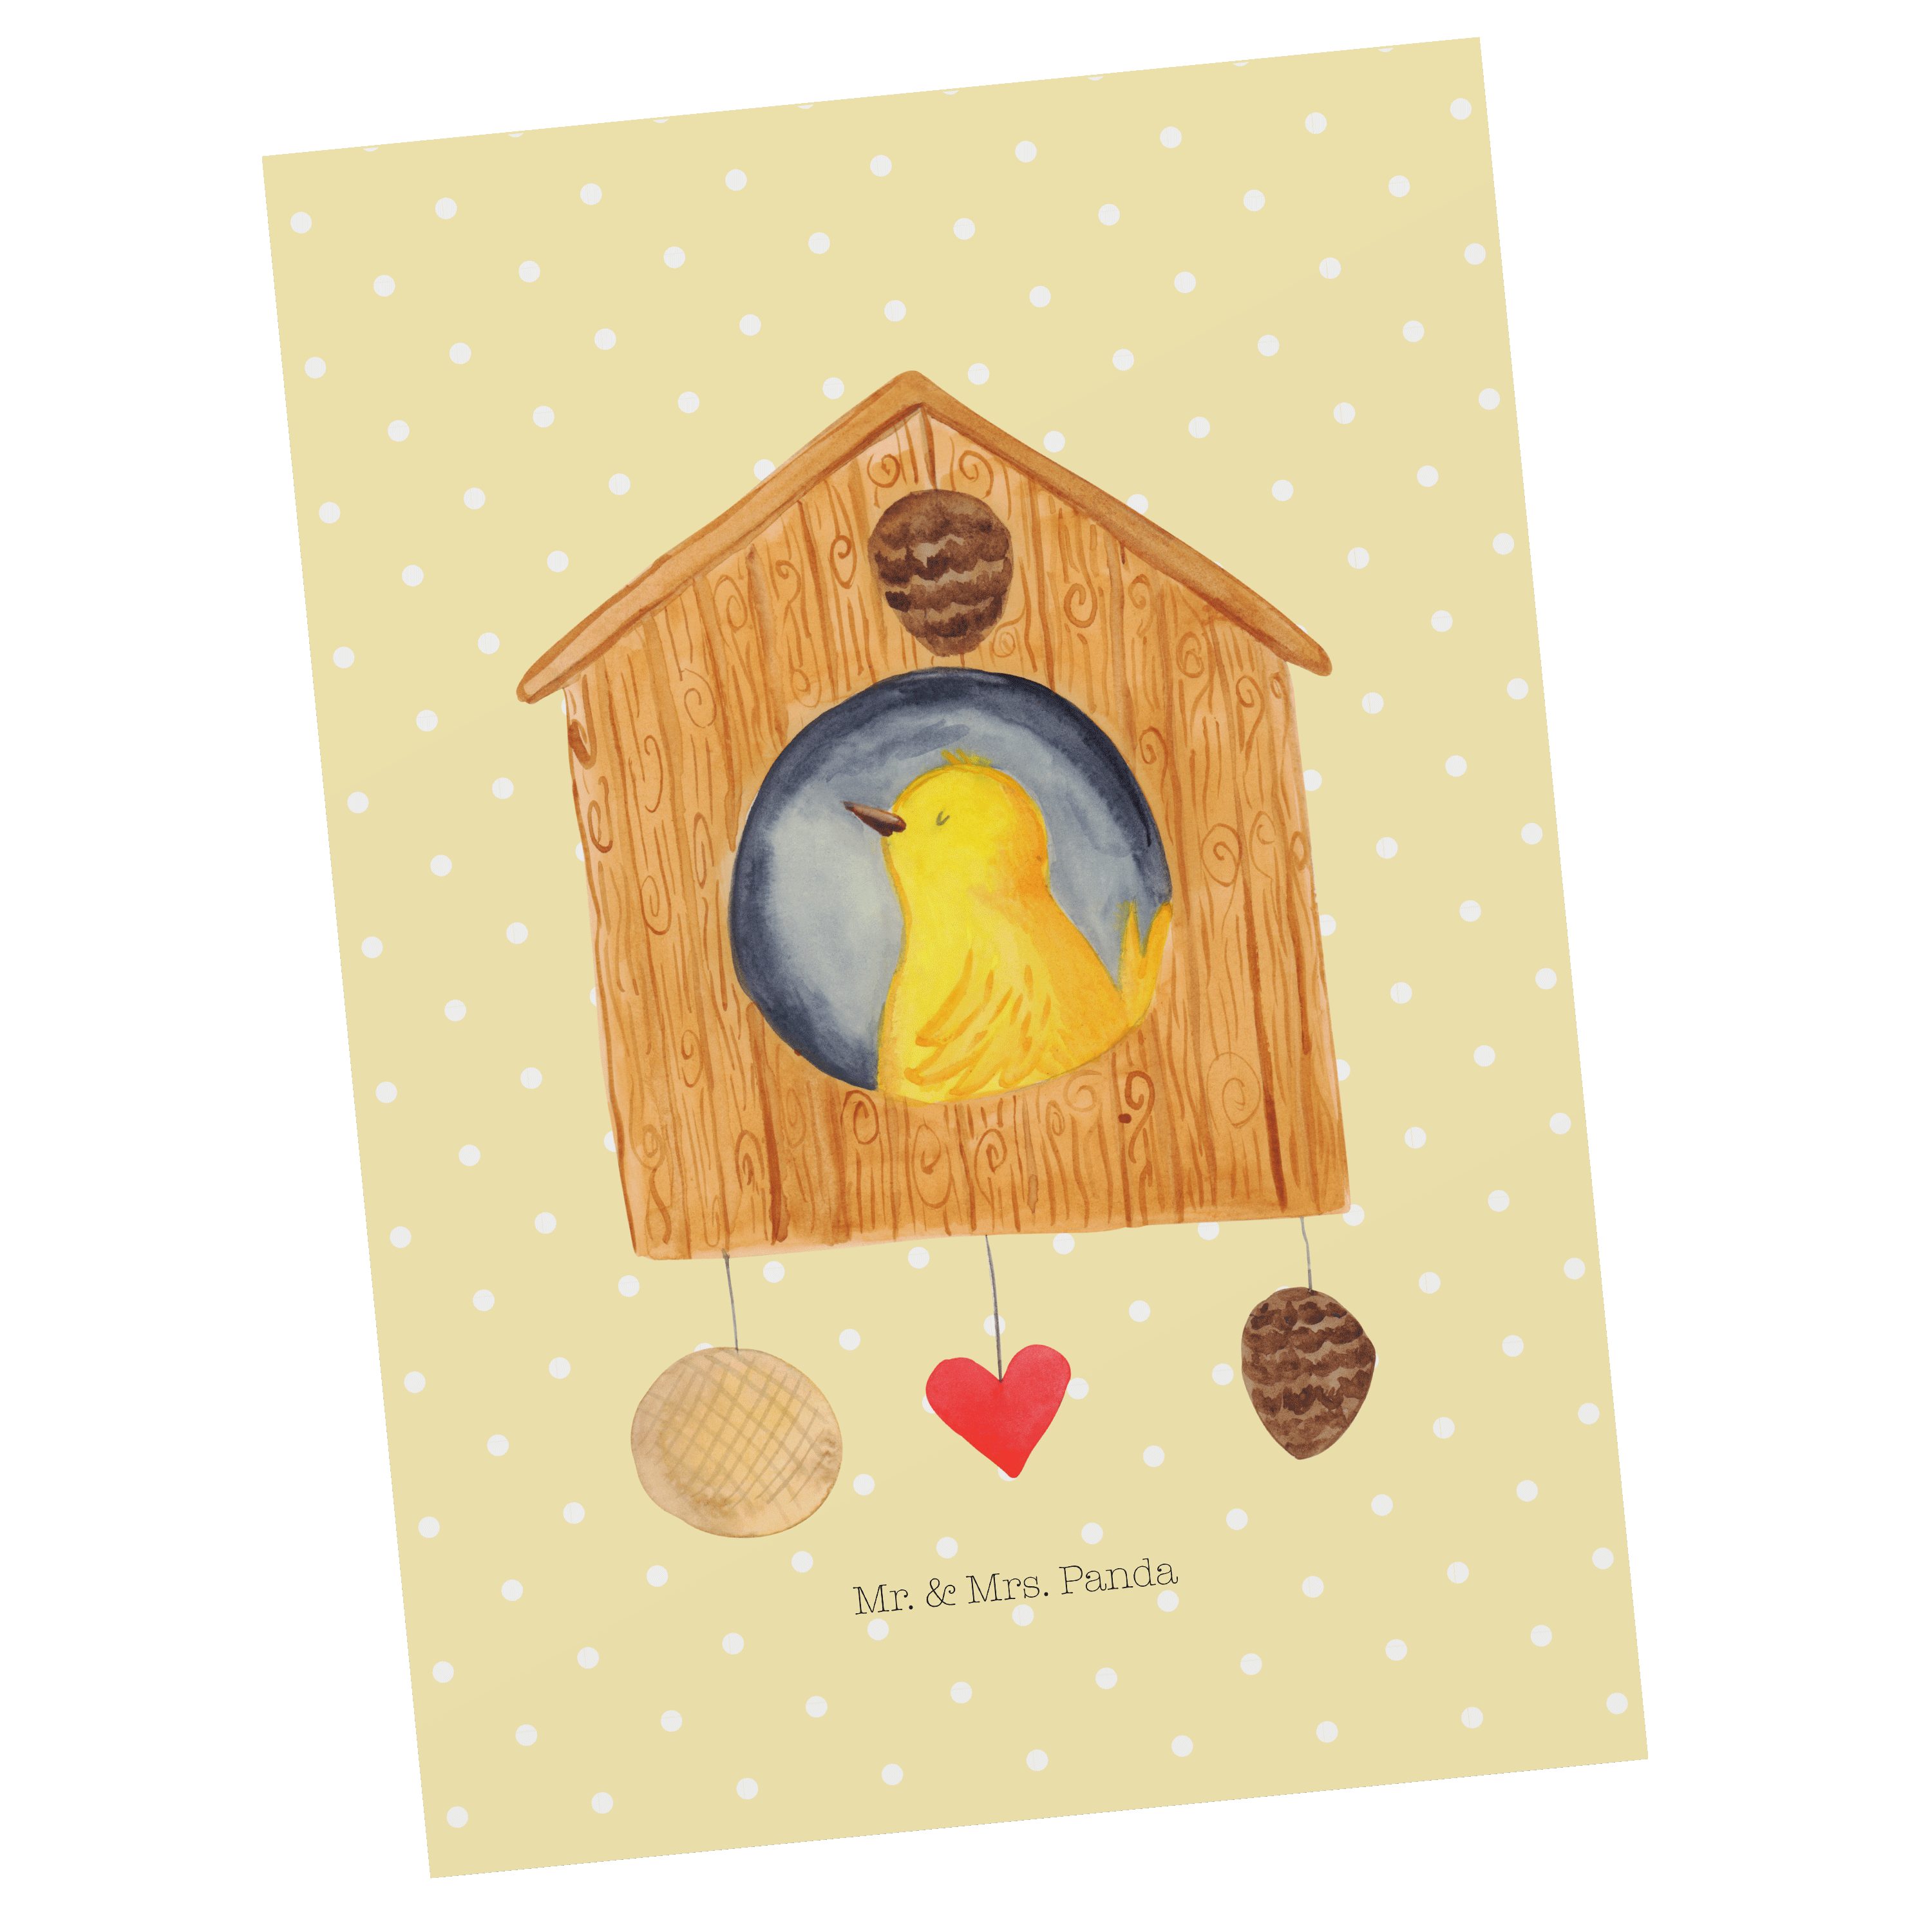 Mr. & Mrs. Panda Postkarte Vogelhaus - Gelb Pastell - Geschenk, Ansichtskarte, Gute Laune, Tiere